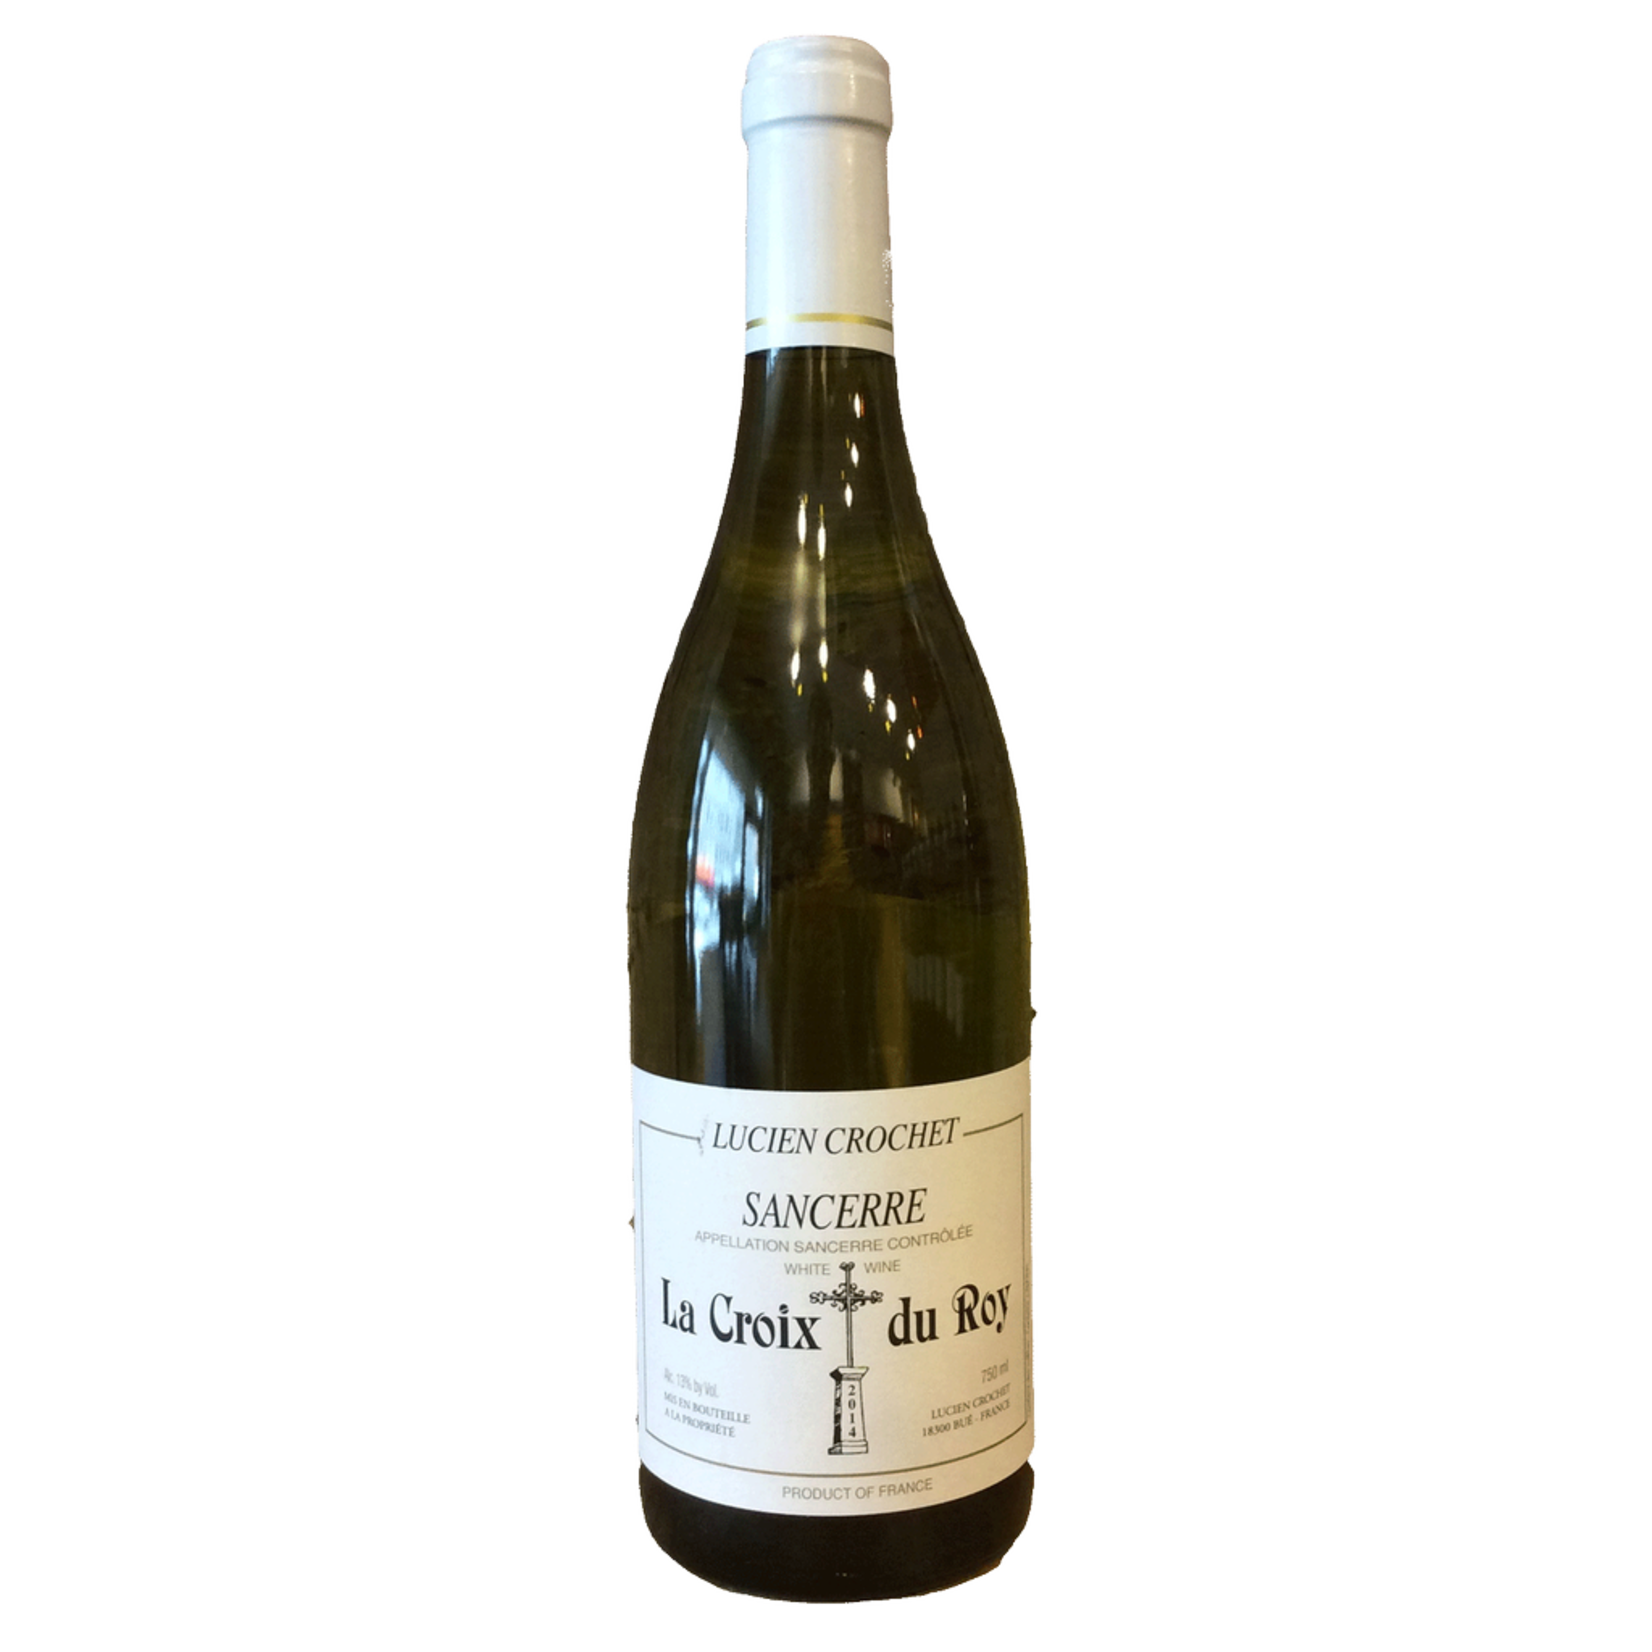 Wine Lucien Crochet Sancerre Croix du Roy 2019